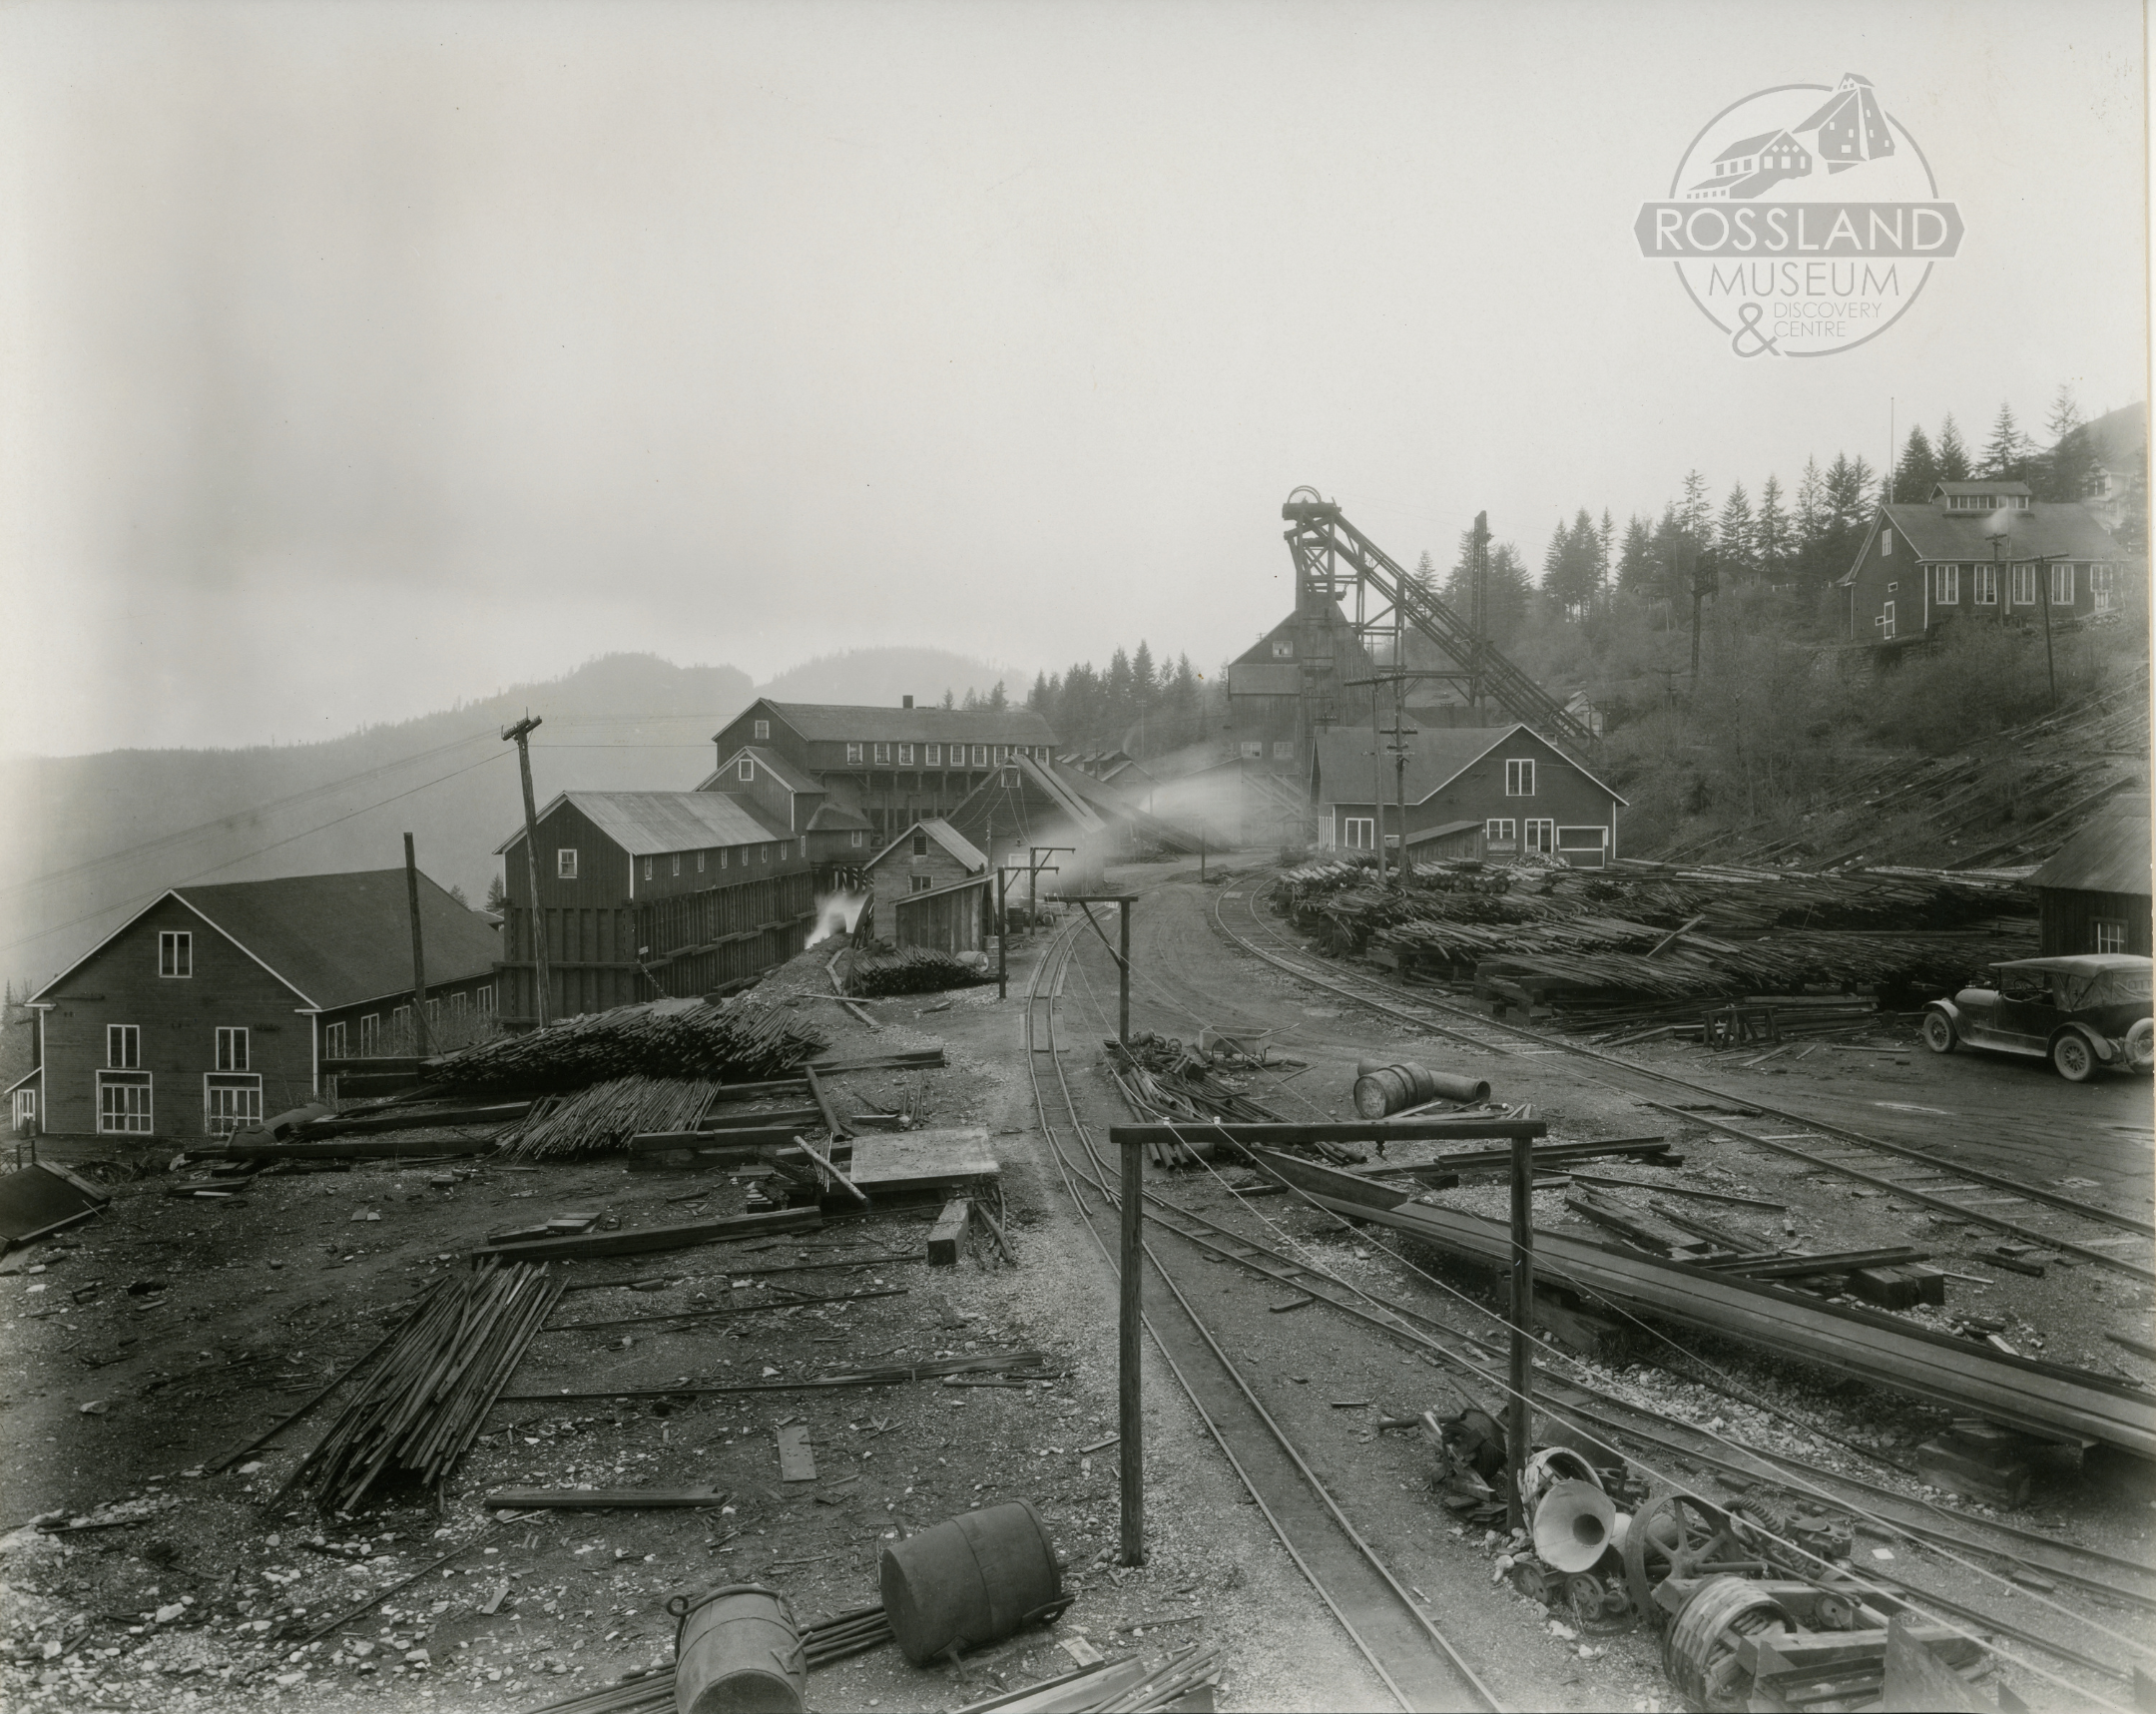 Photo 2304.0016: Centre Star Mine circa 1925